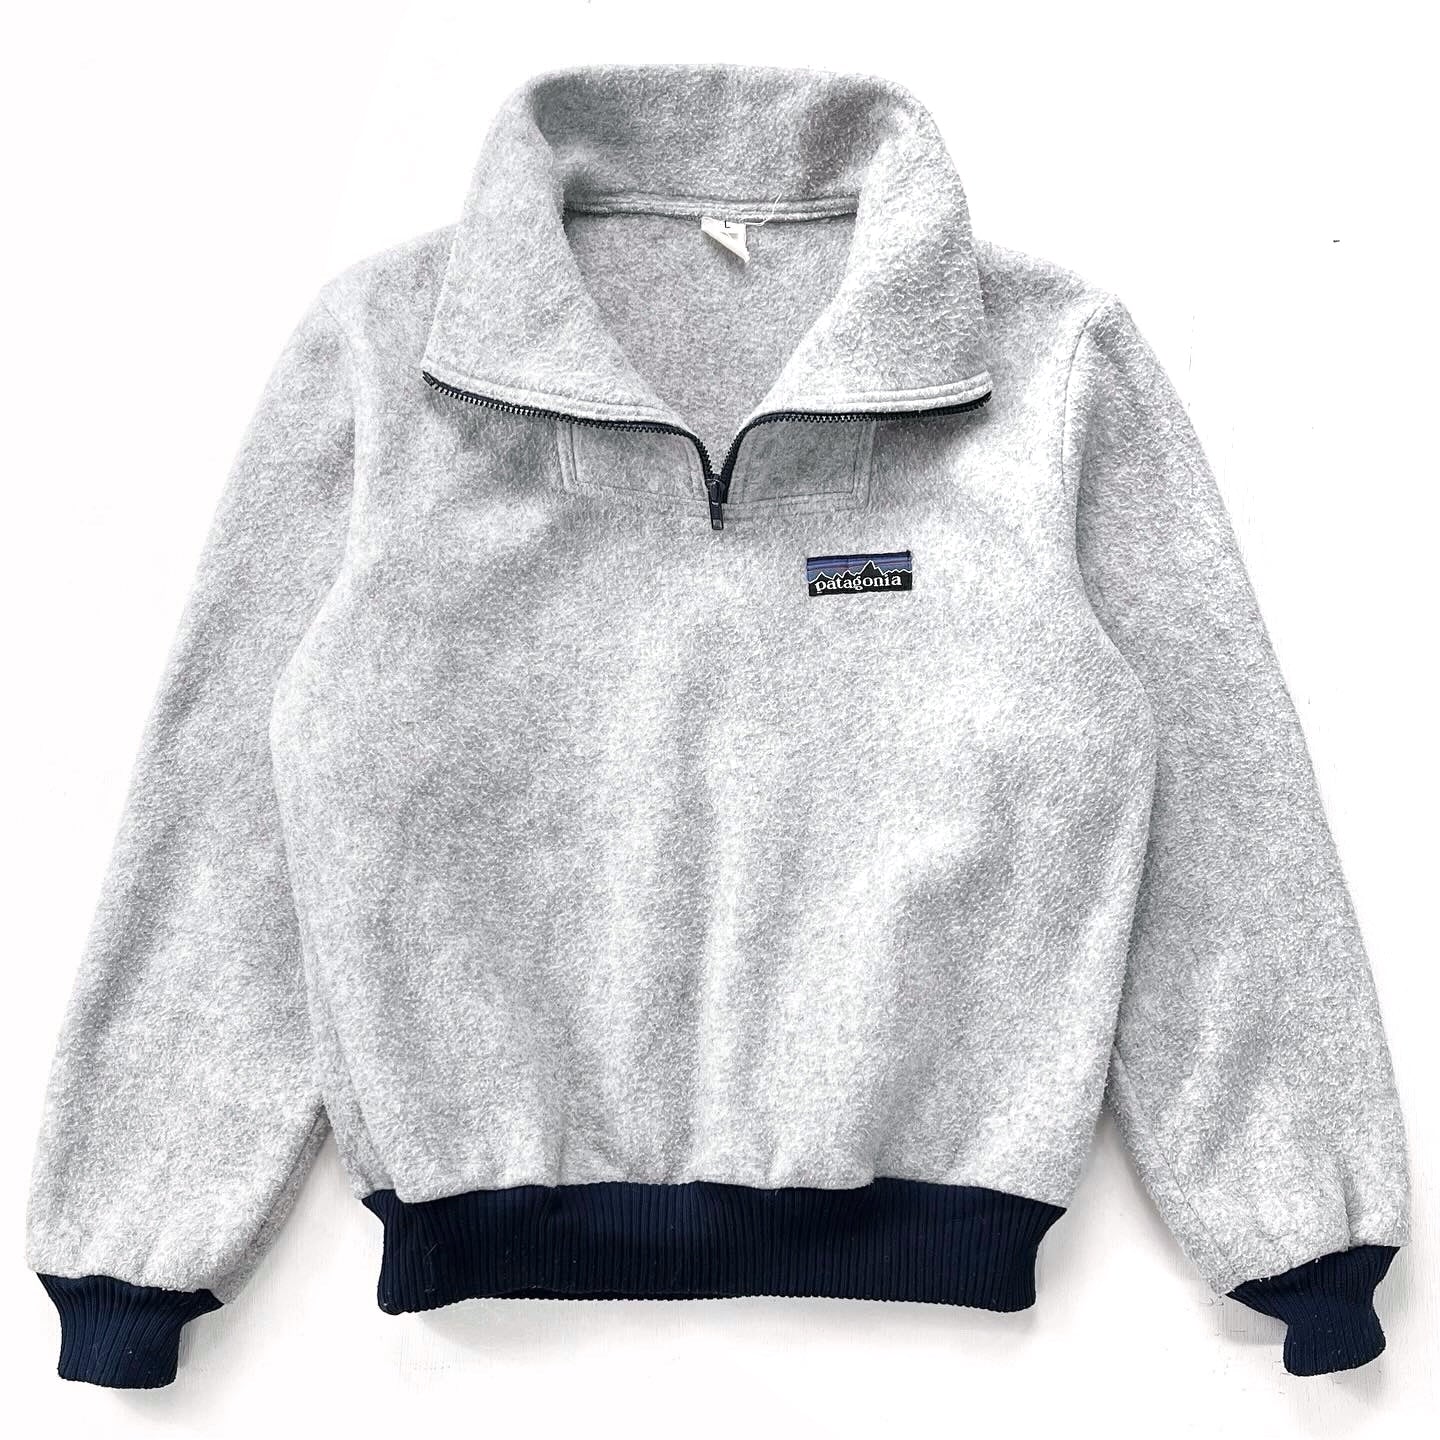 1982 Patagonia Bunting Half-Zip Fleece Sweater, Grey & Navy (M)